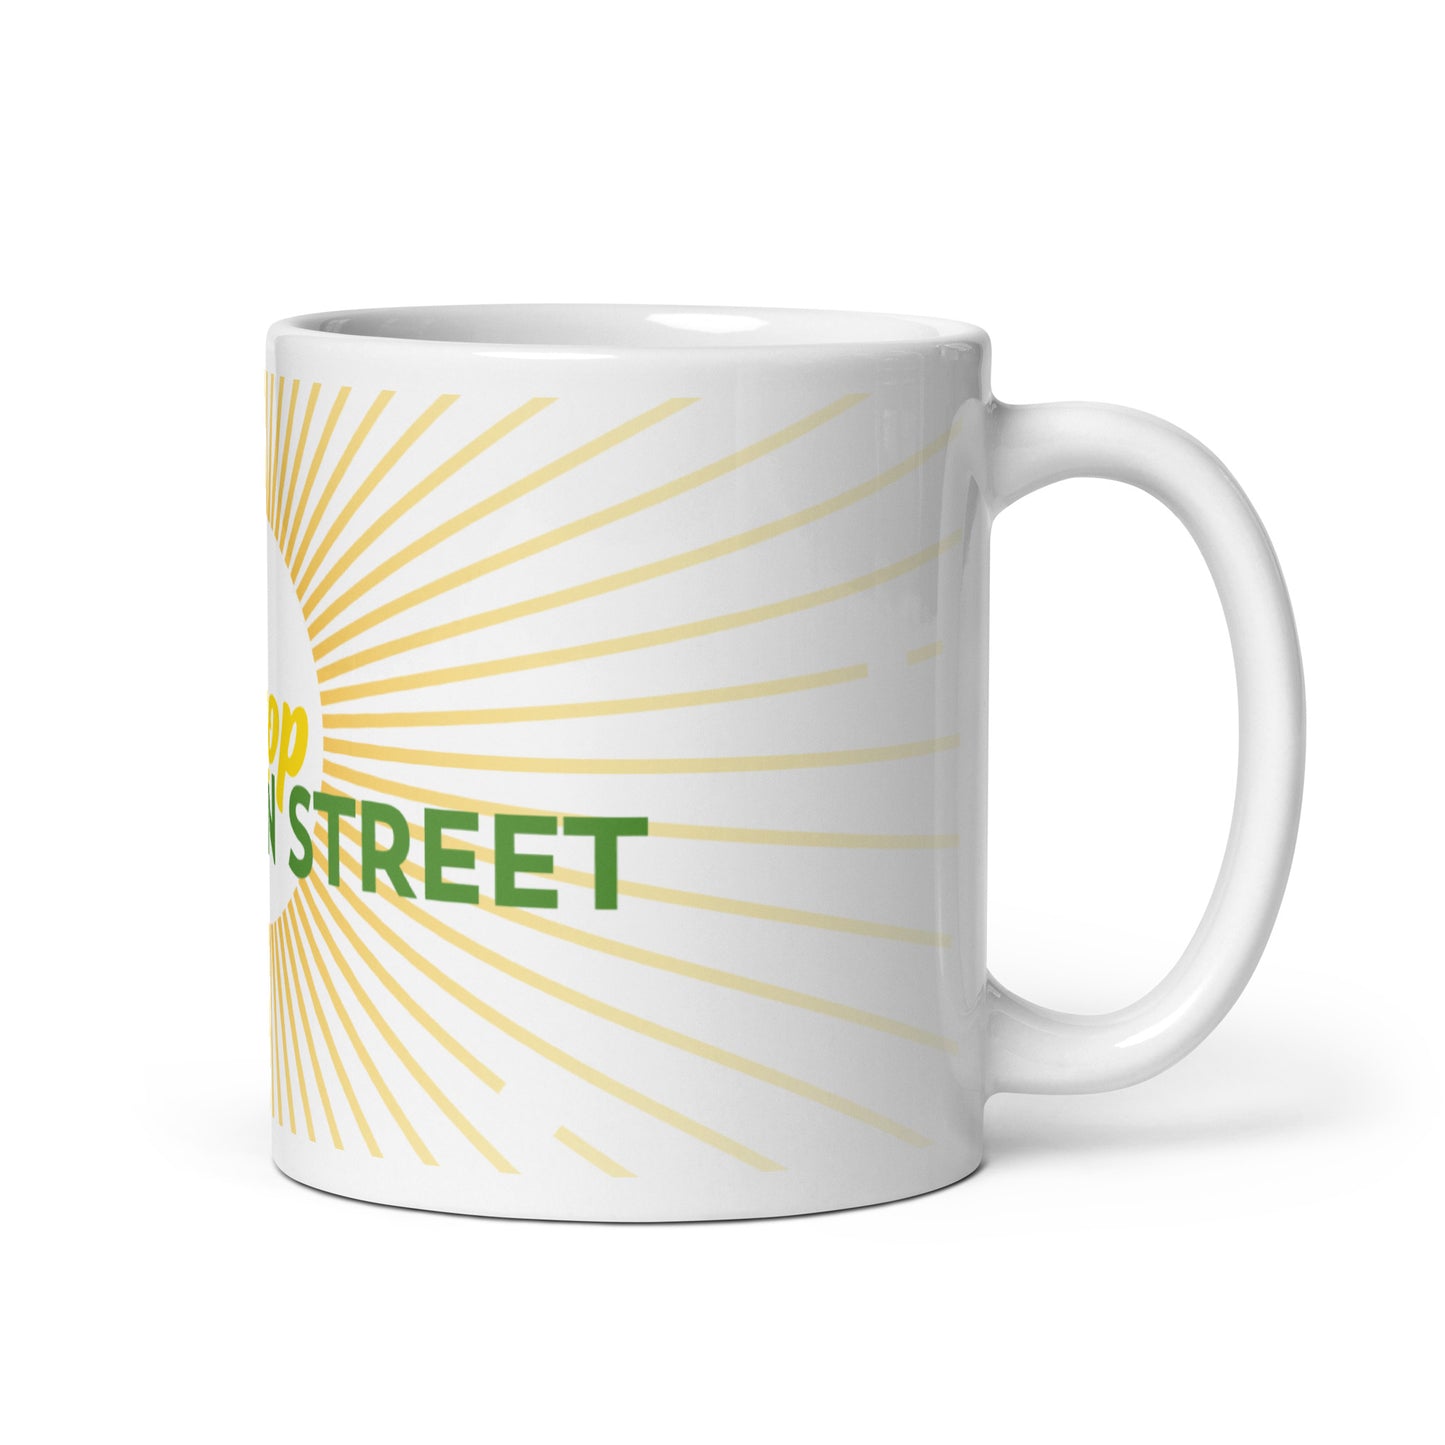 "Shop Main Street" White & Yellow Glossy Mug